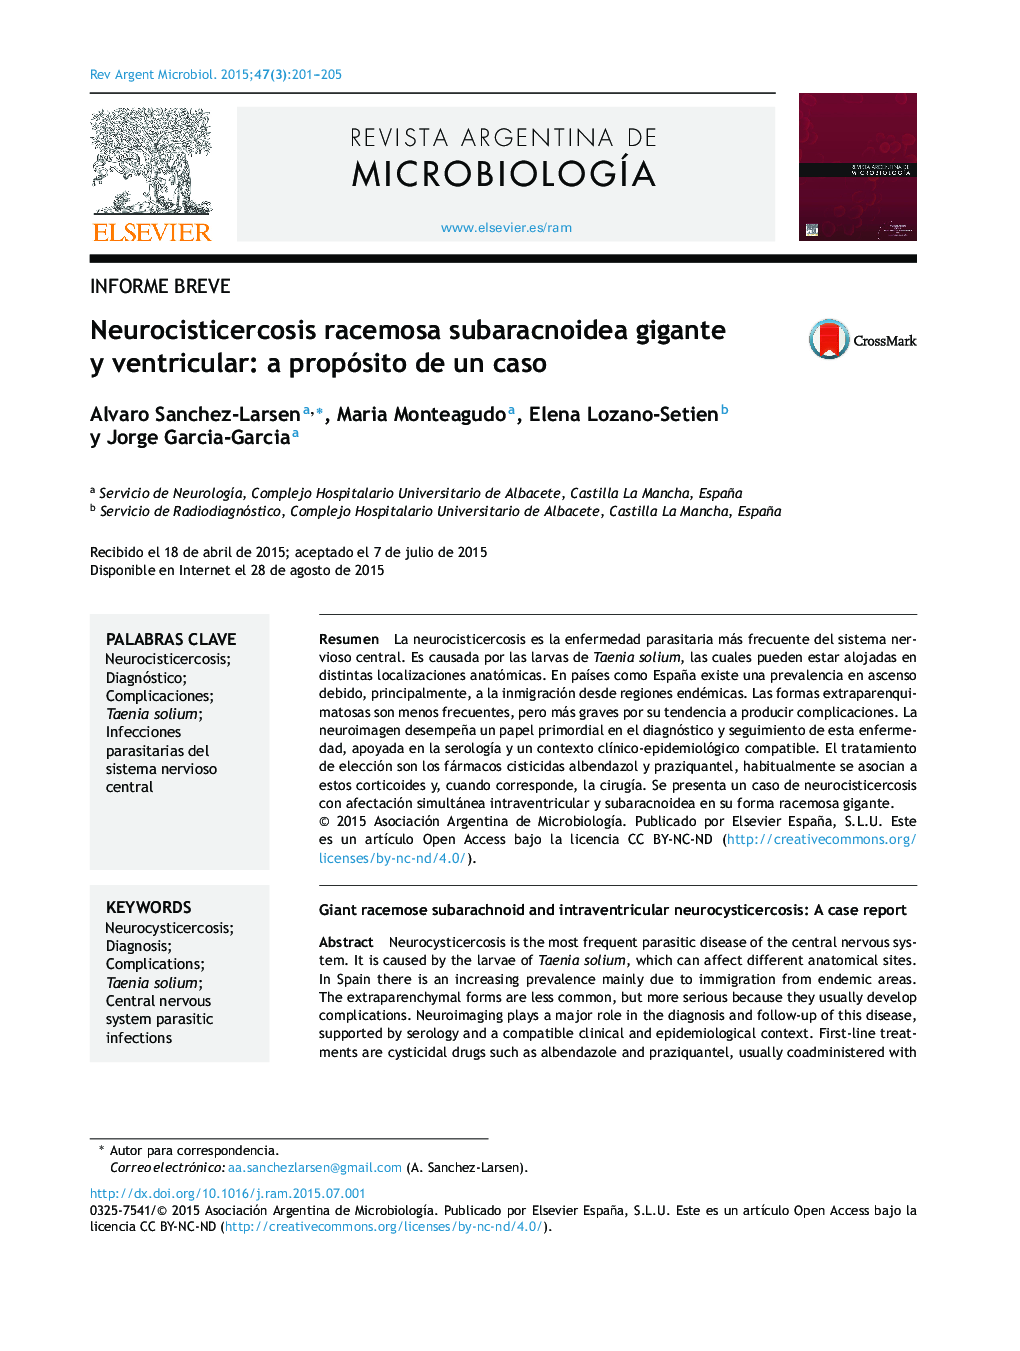 Neurocisticercosis racemosa subaracnoidea gigante y ventricular: a propósito de un caso